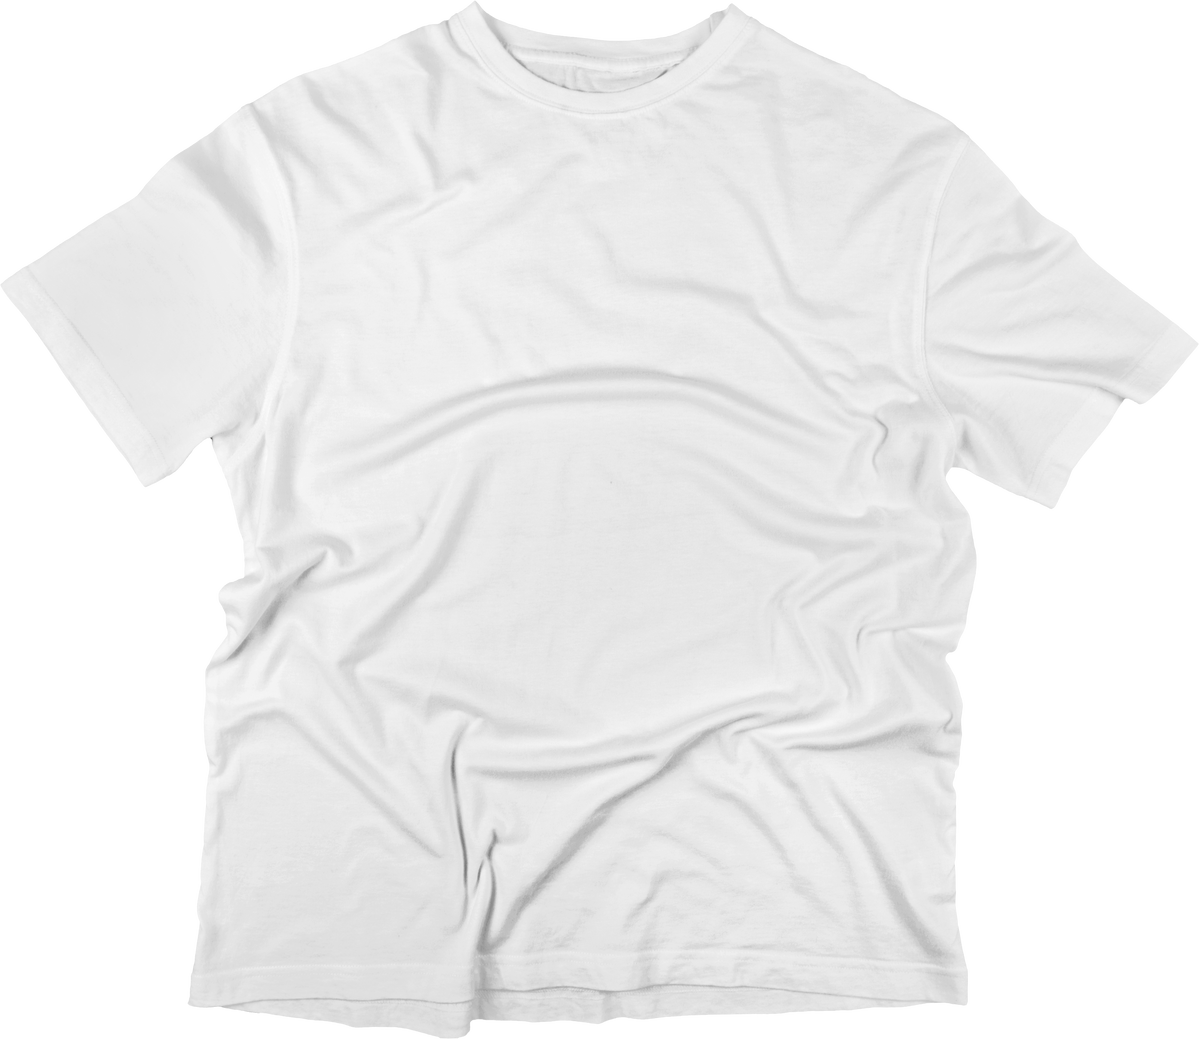 White Shirt Isolated